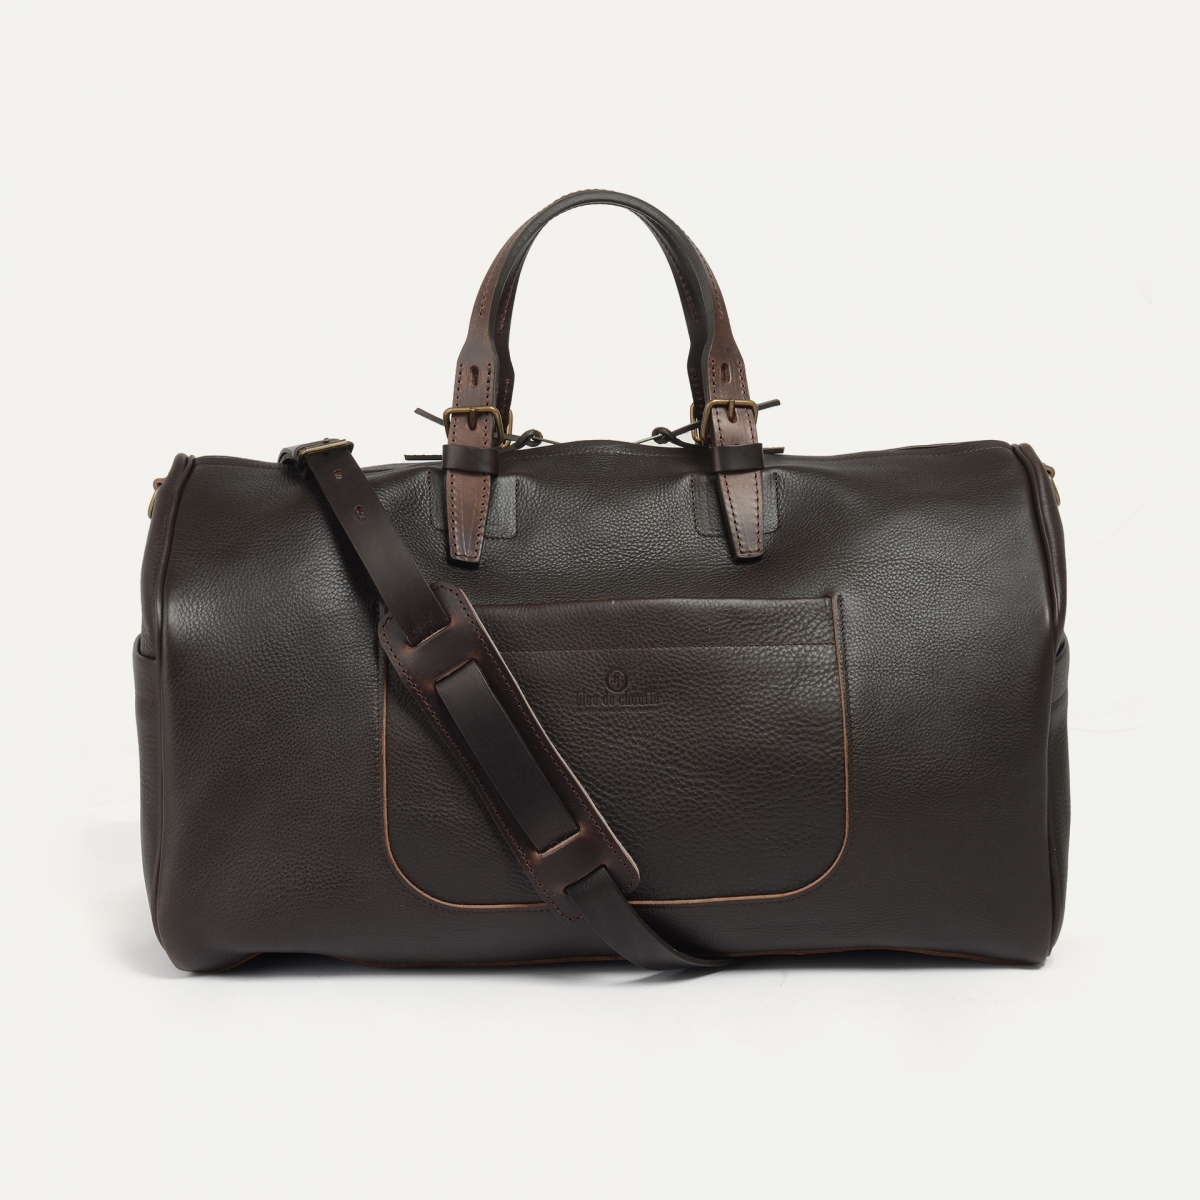 Hobo Travel bag - Dark Brown (image n°1)